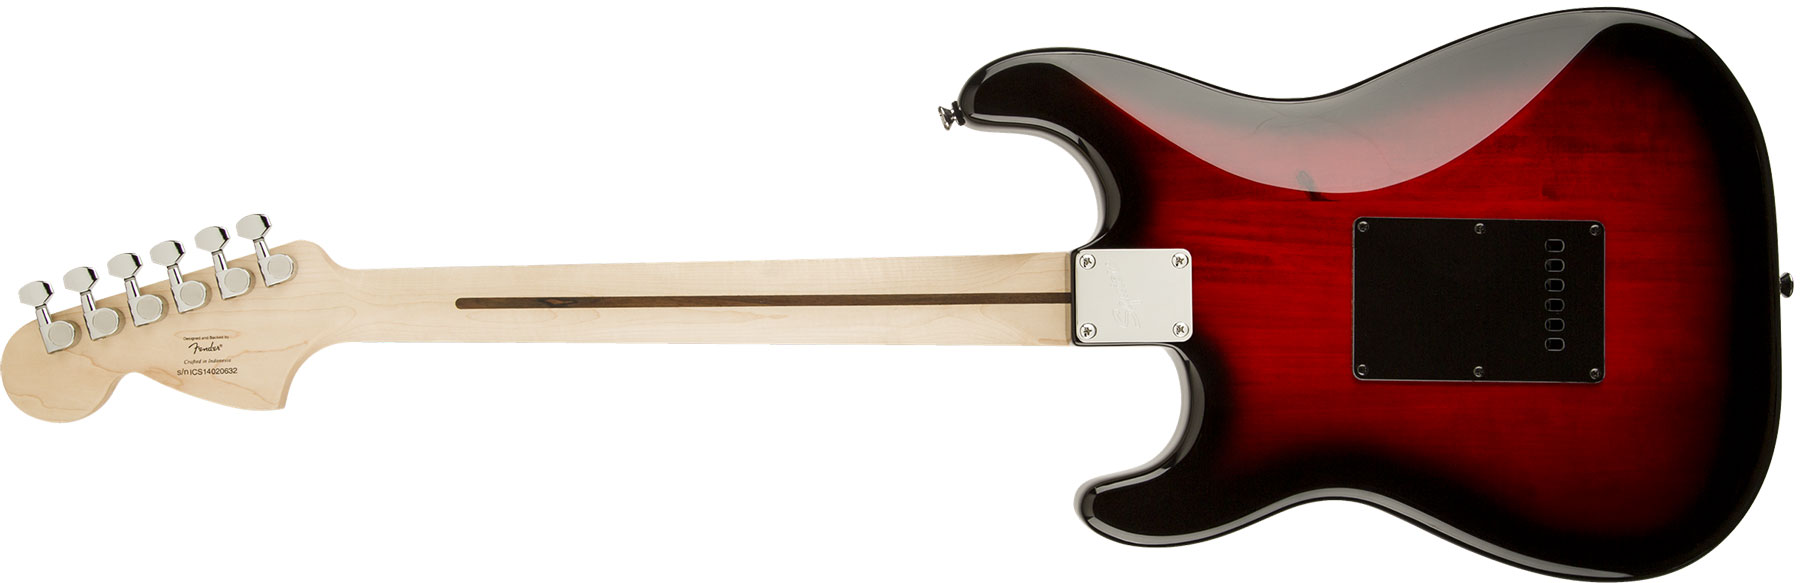 Squier Strat Standard Sss Lau - Antique Burst - Elektrische gitaar in Str-vorm - Variation 1